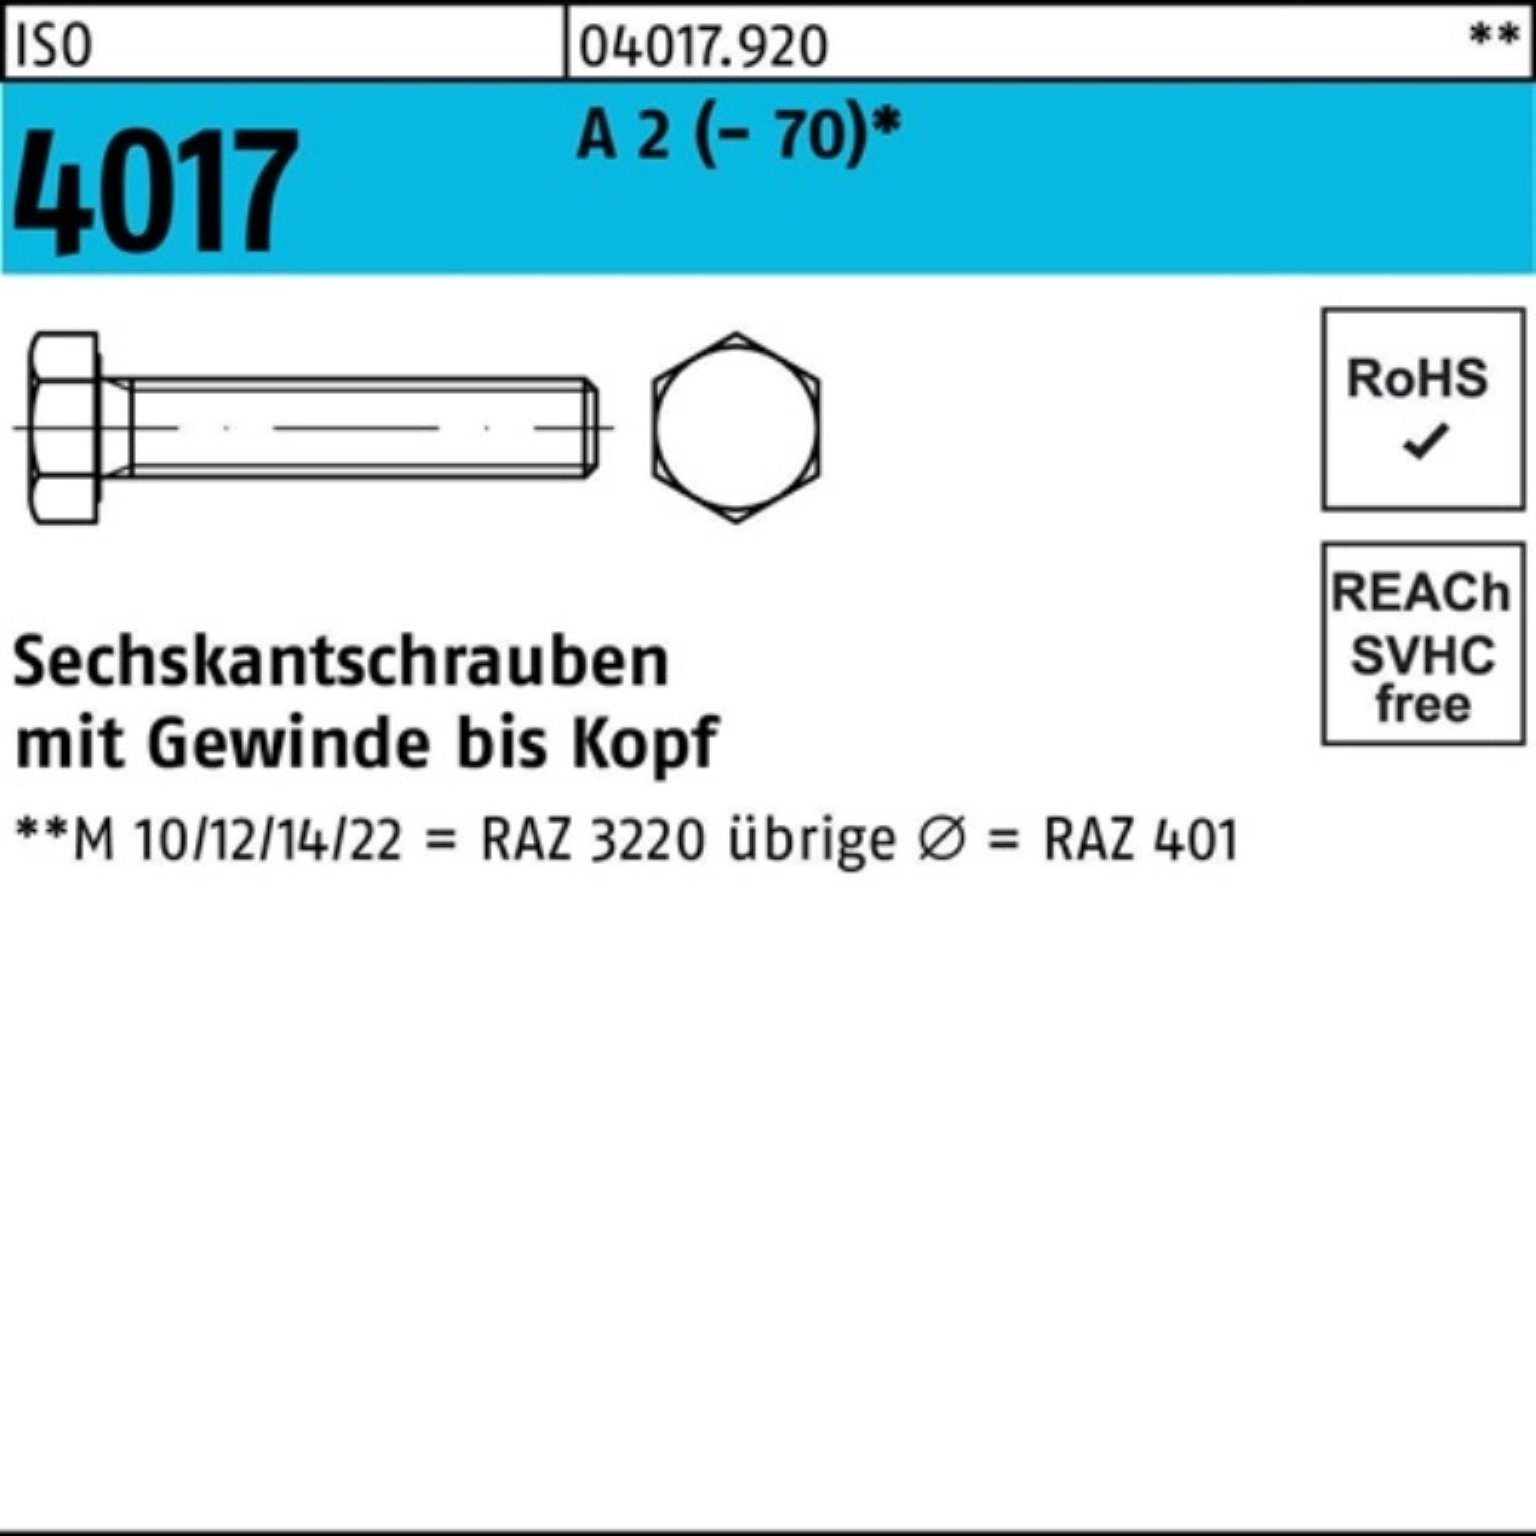 Bufab Sechskantschraube 200er Pack Sechskantschraube ISO 4017 VG M5x 40 A 2 (70) 200 Stück | Schrauben